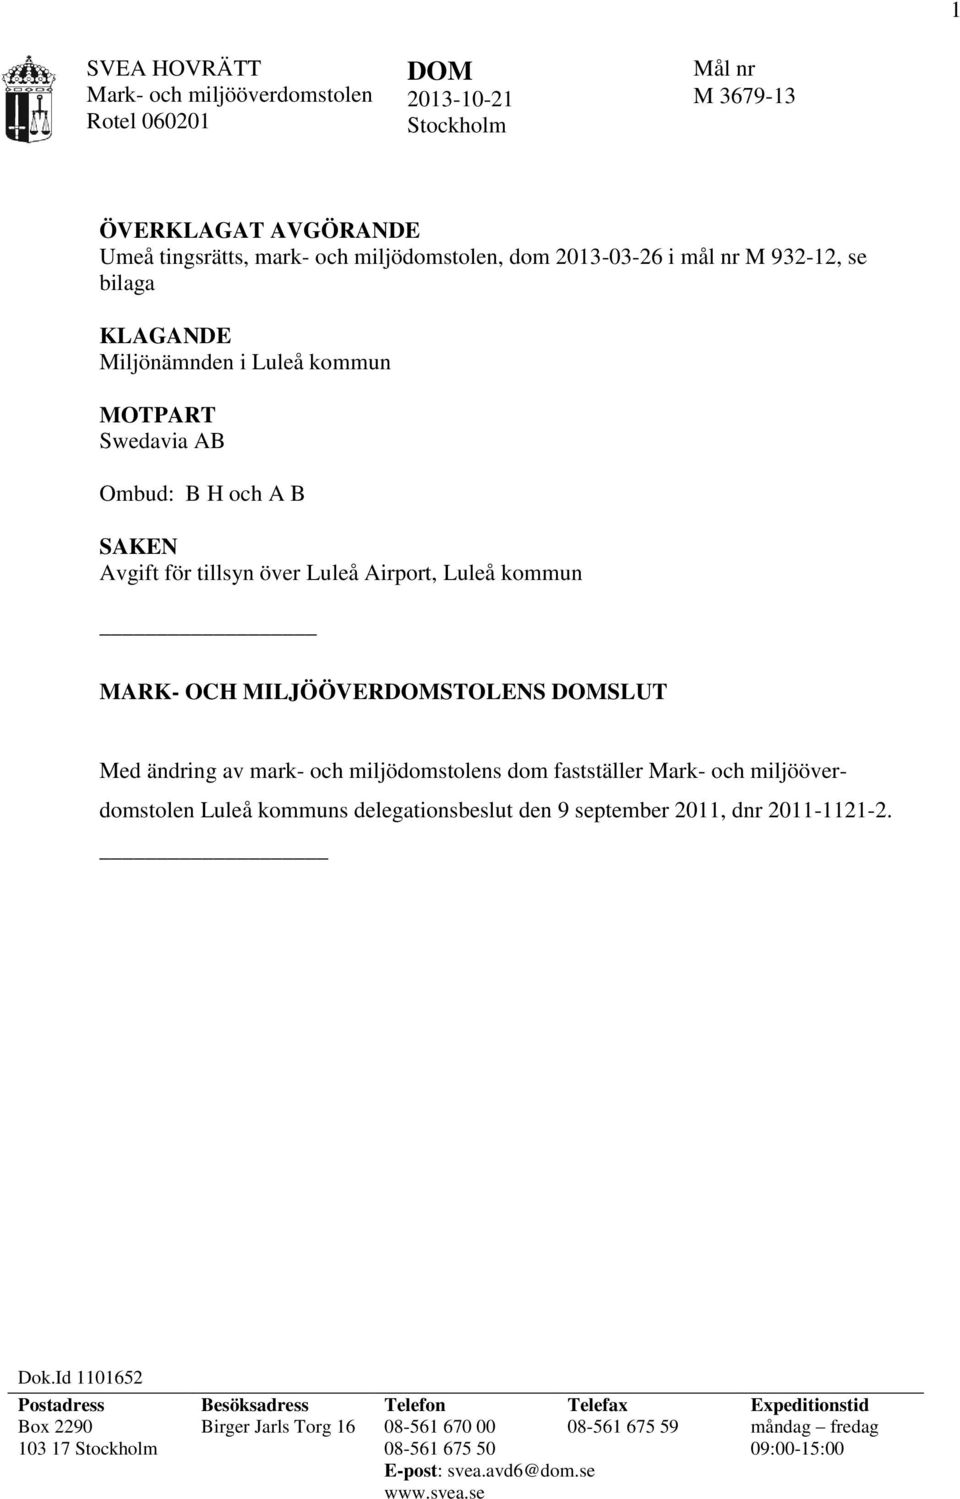 ändring av mark- och miljödomstolens dom fastställer Mark- och miljööverdomstolen Luleå kommuns delegationsbeslut den 9 september 2011, dnr 2011-1121-2. Dok.